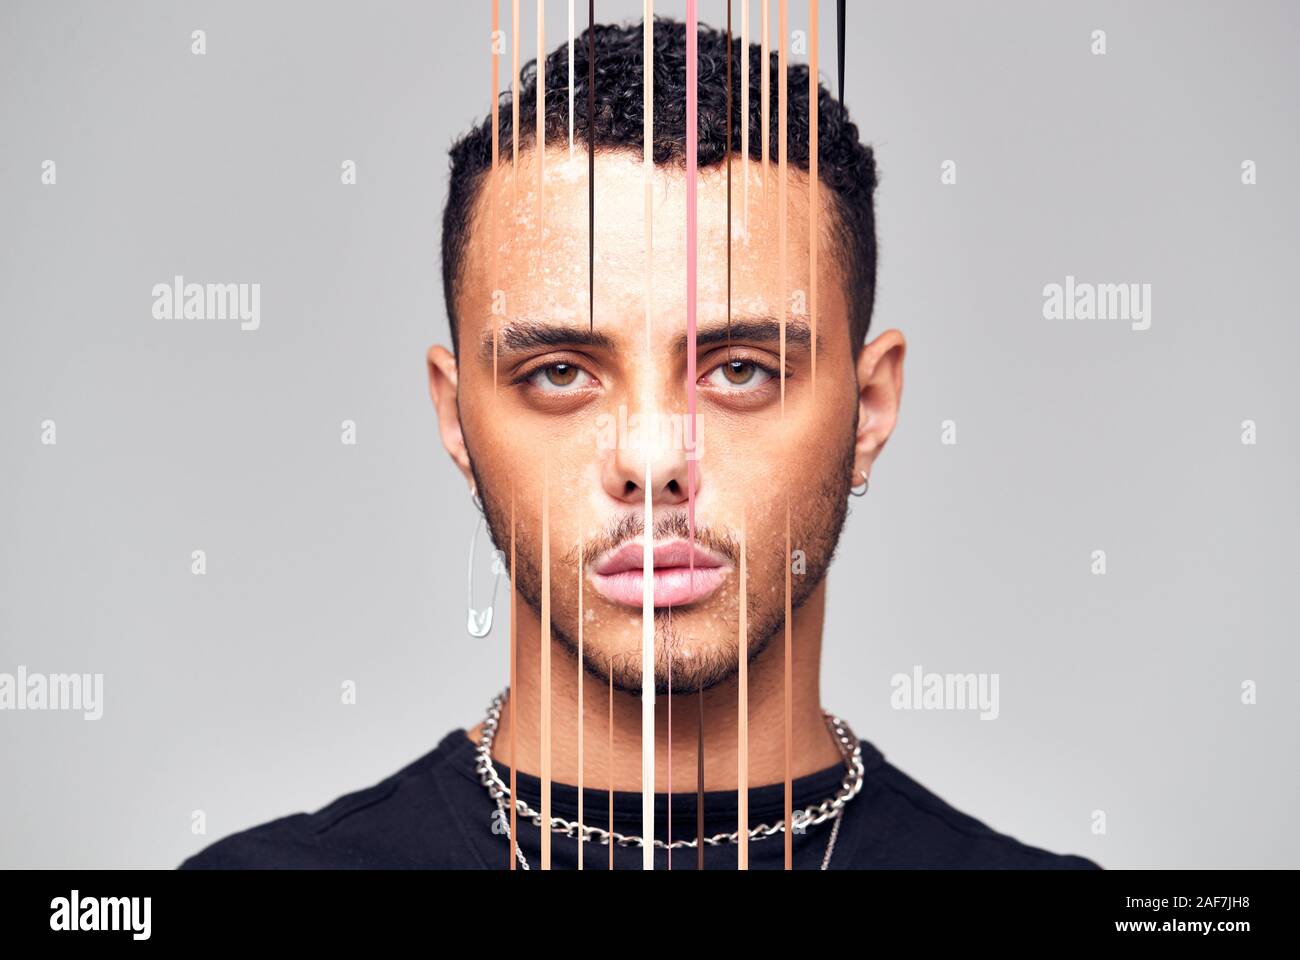 Psychische Gesundheit Konzept mit Portrait des jungen Mannes mit Gesicht verdeckt durch vertikale Linien Stockfoto